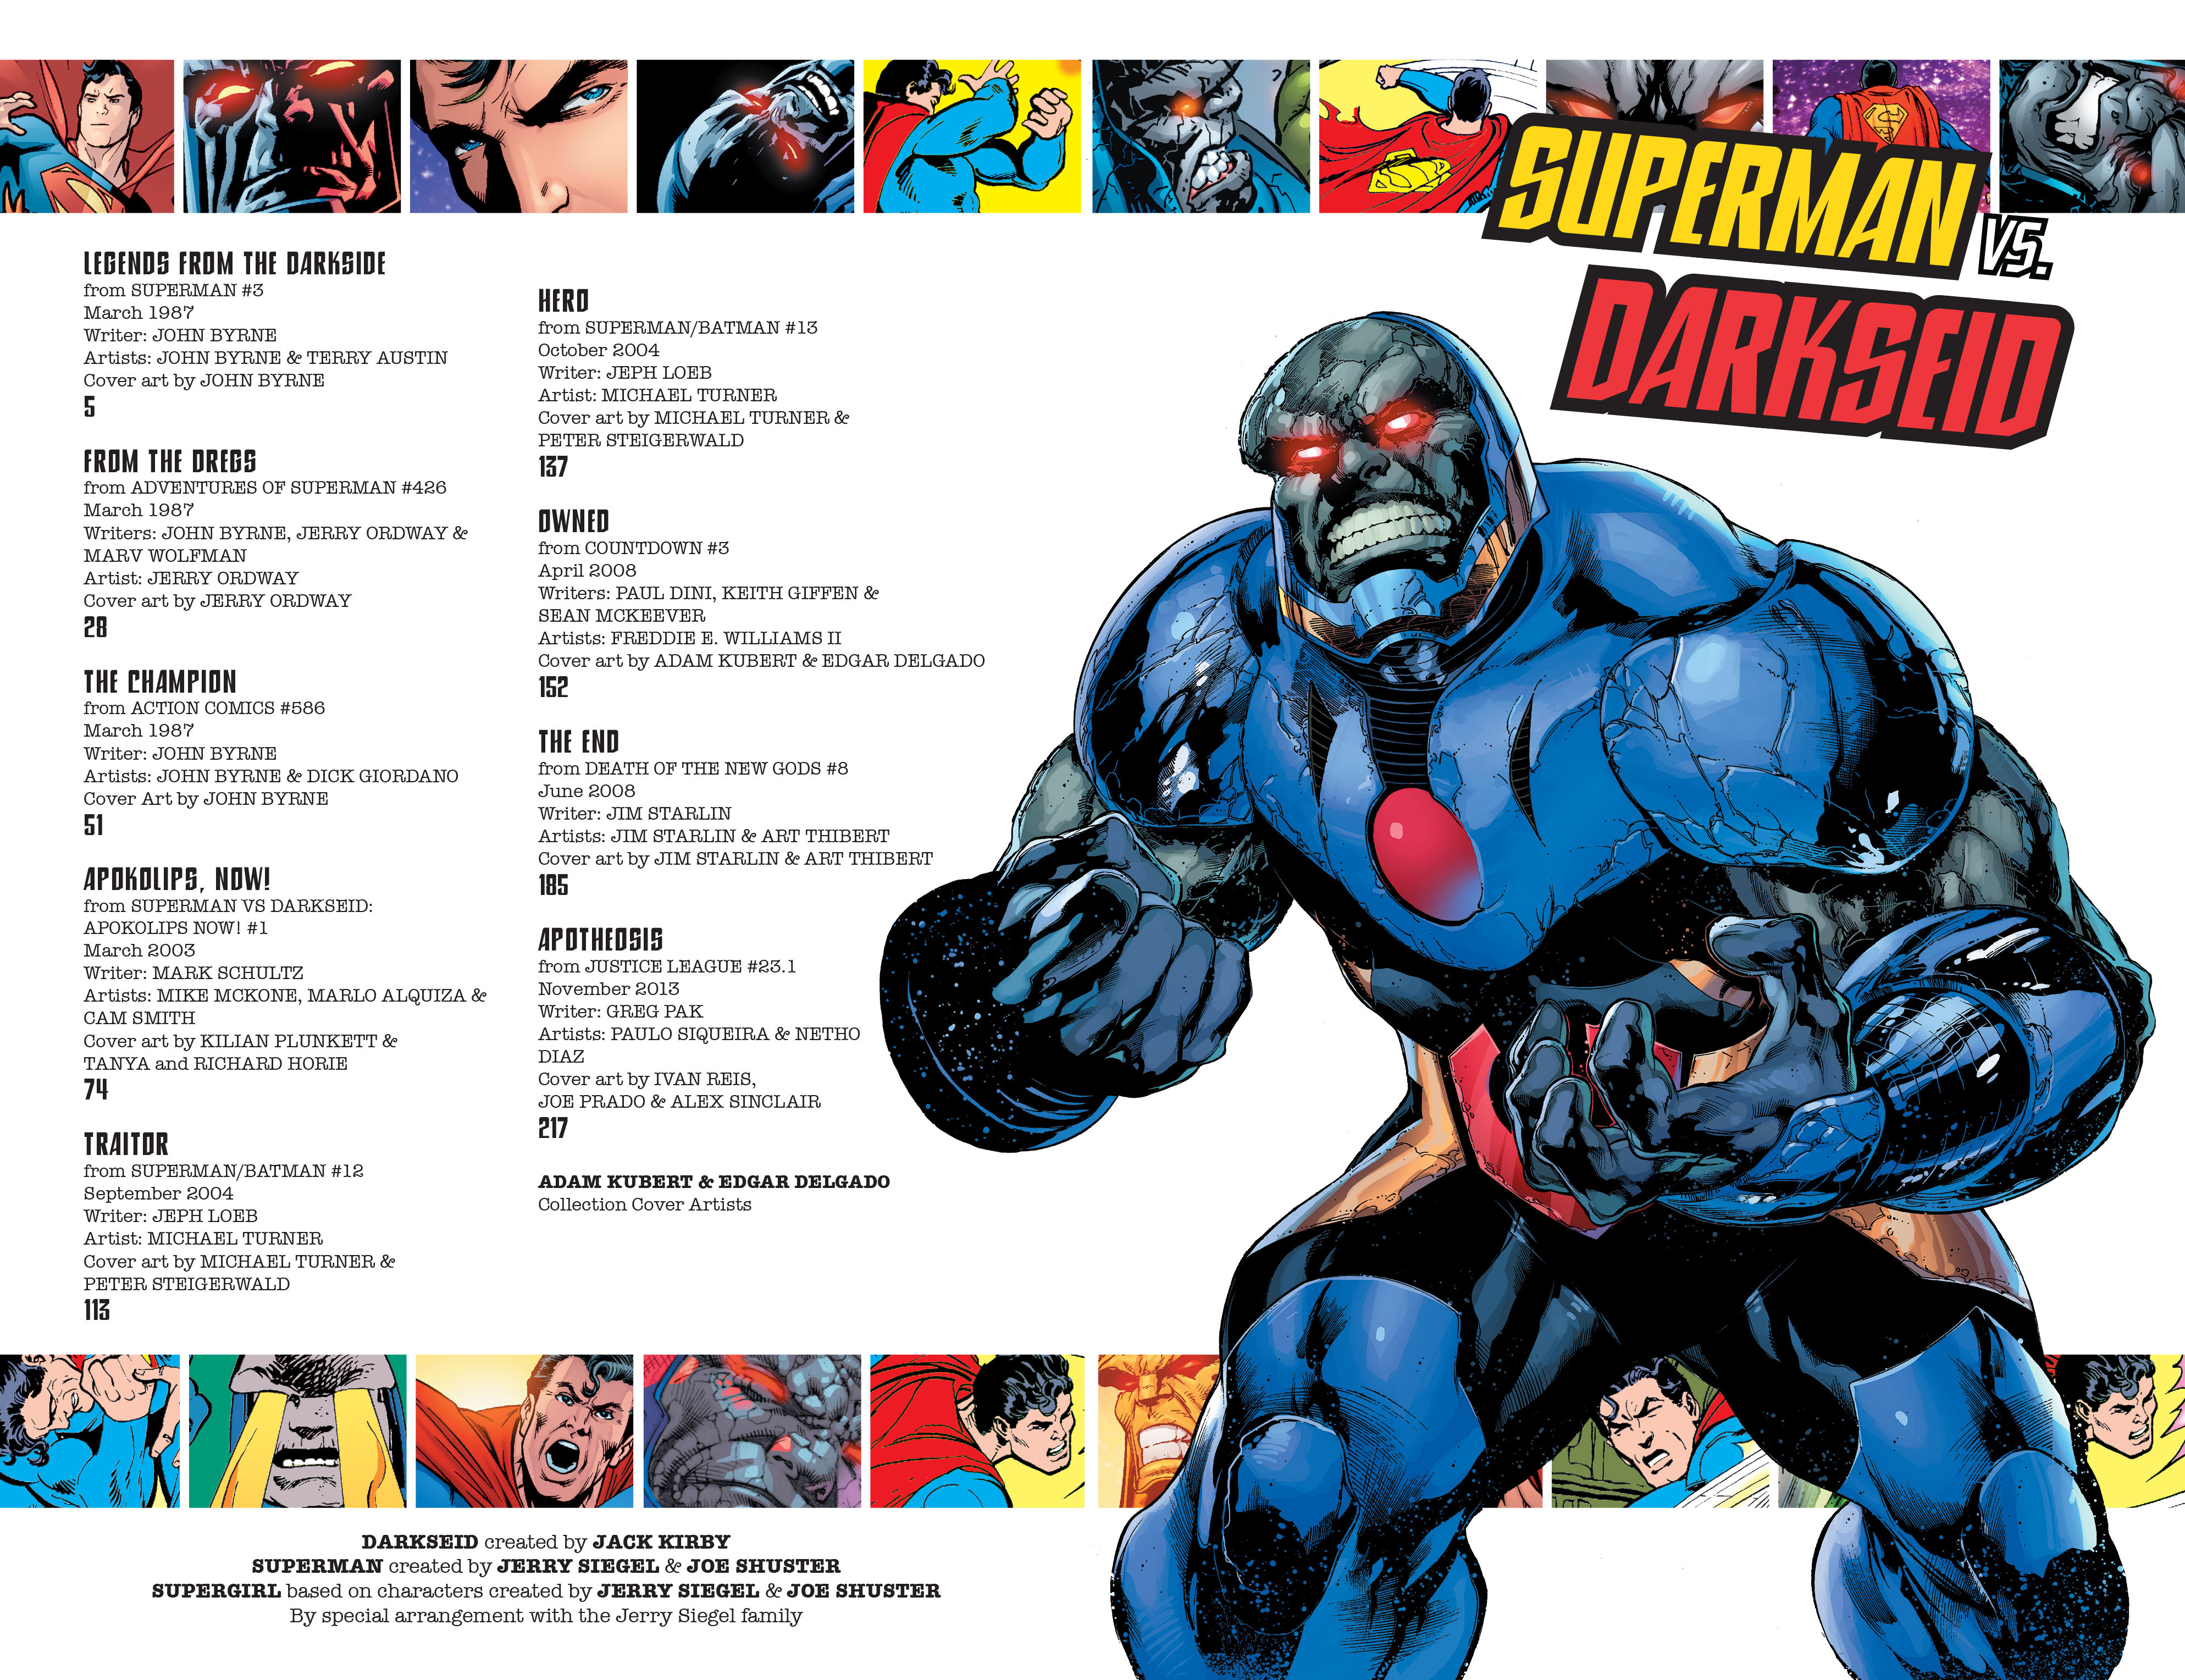 Read online Superman vs. Darkseid comic -  Issue # TPB - 3